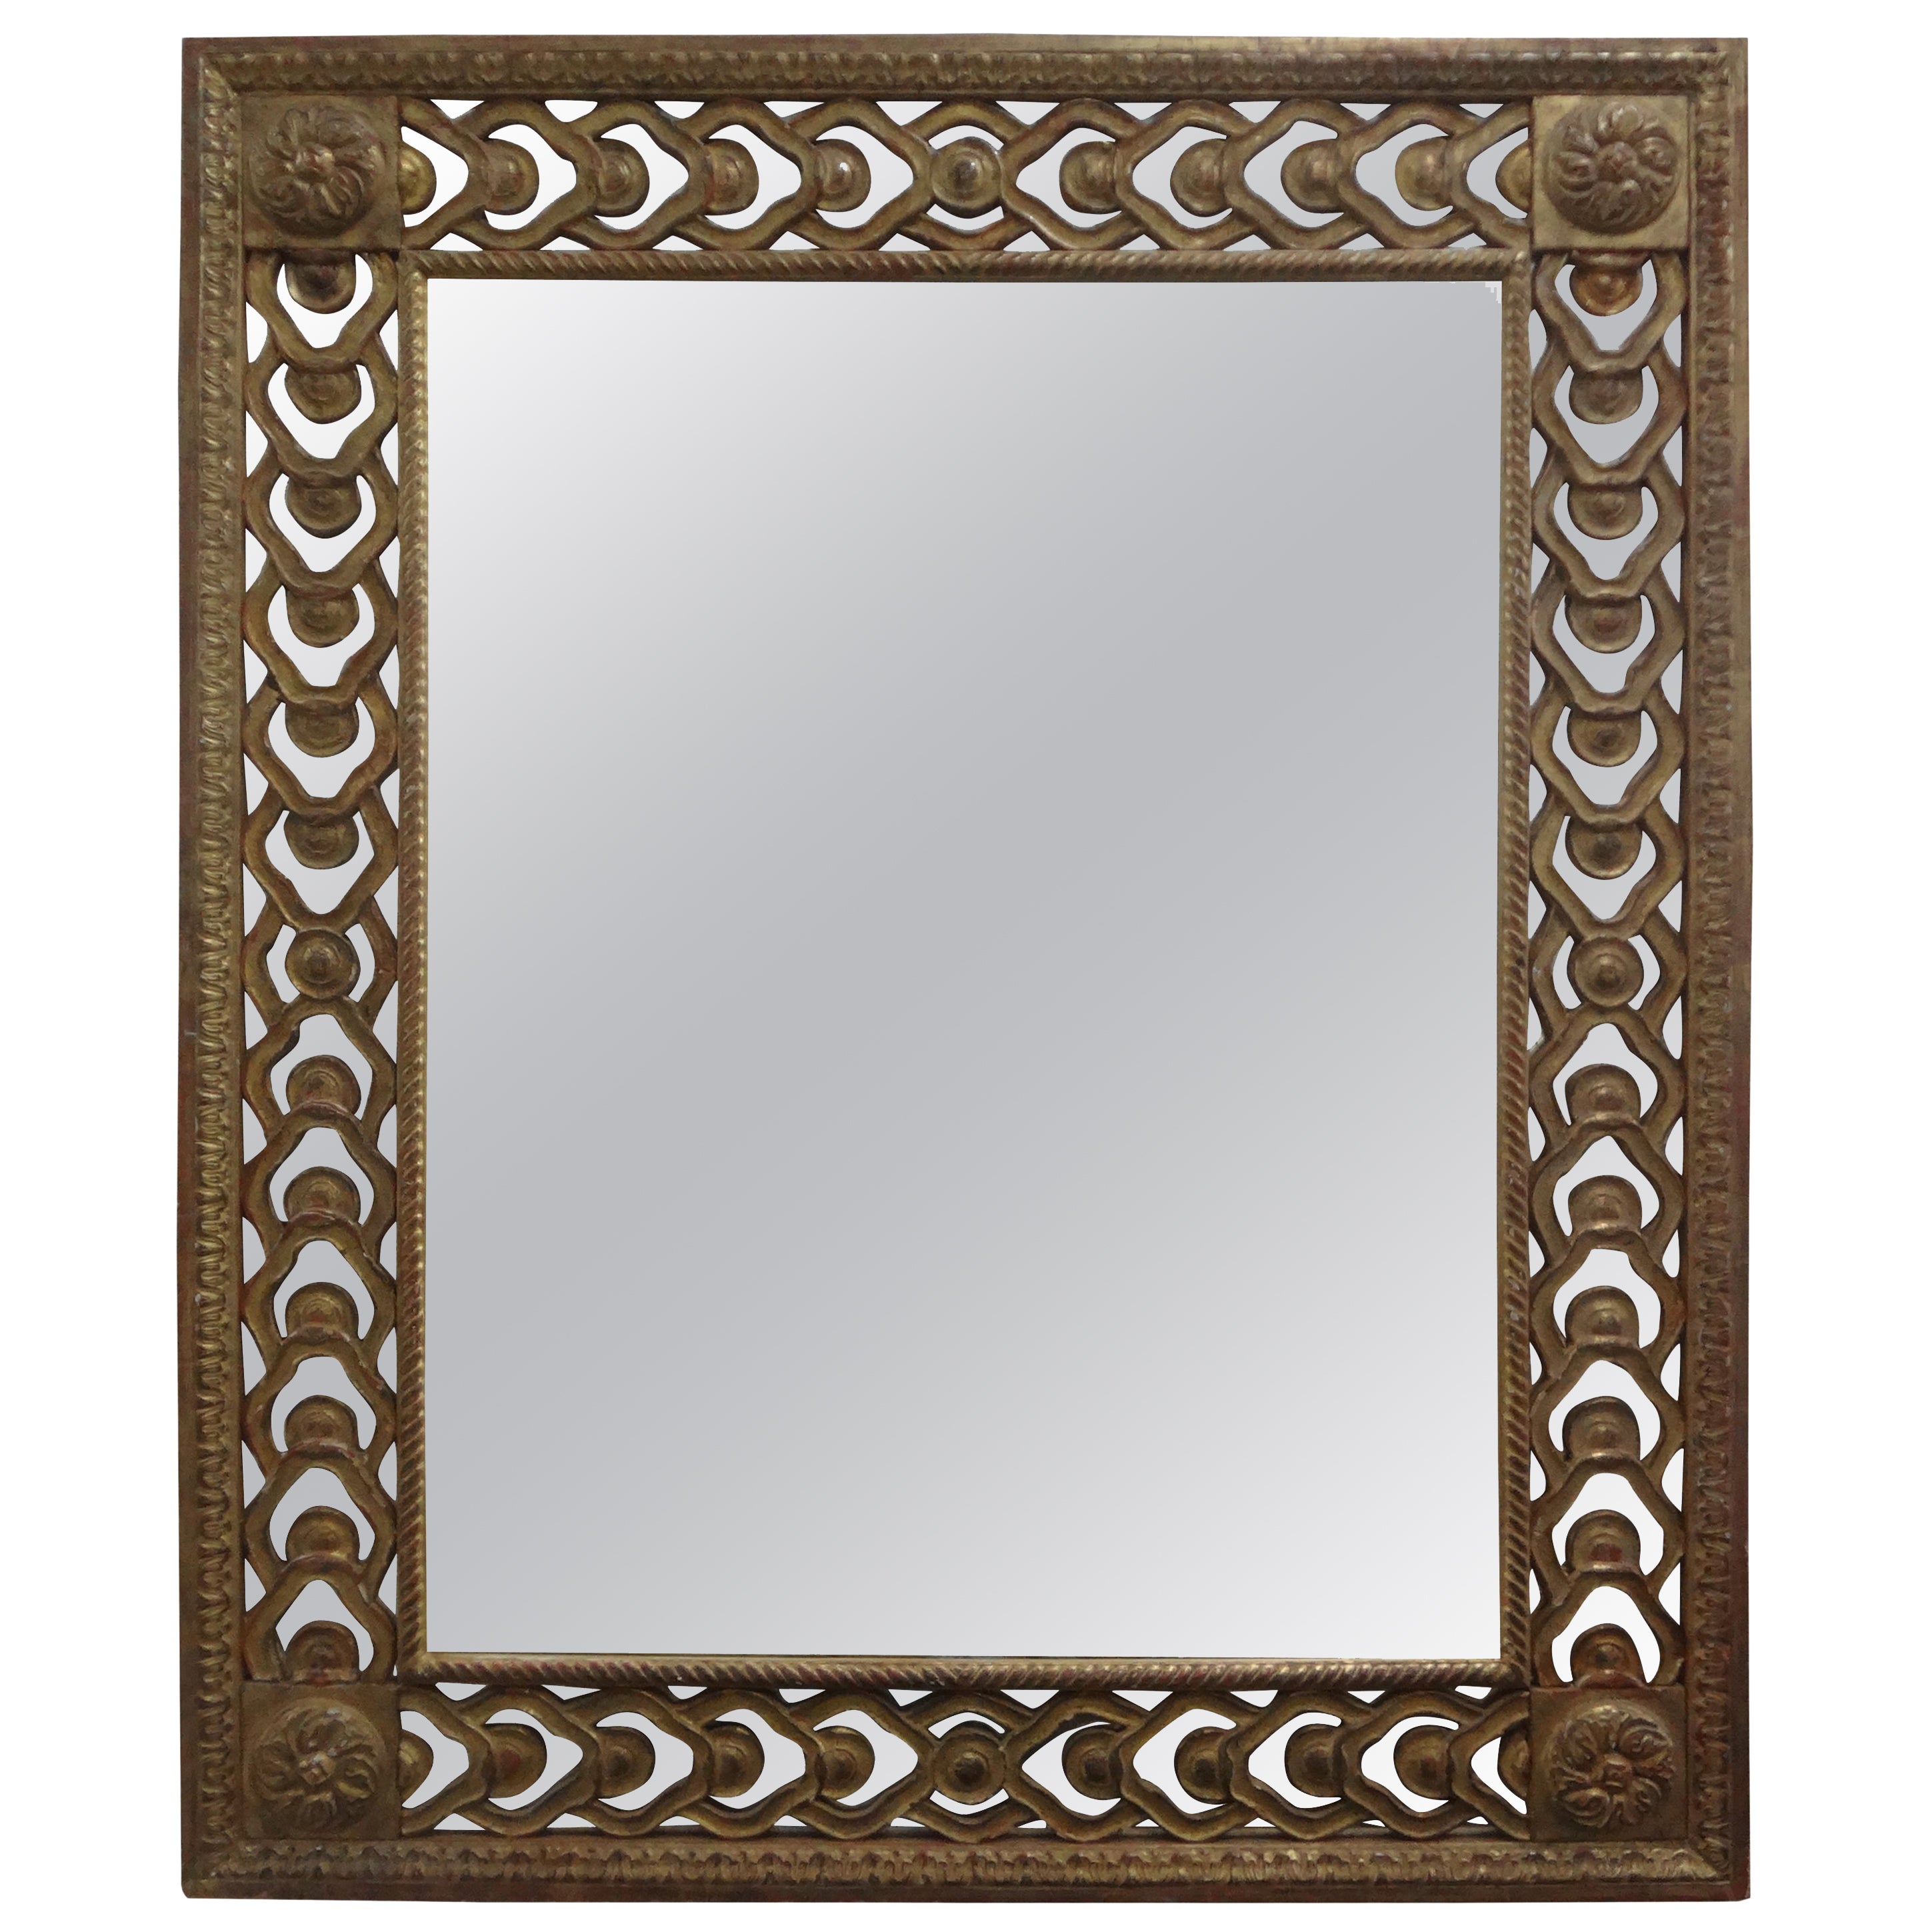 Italian Louis XVI Style Giltwood Fretwork Mirror